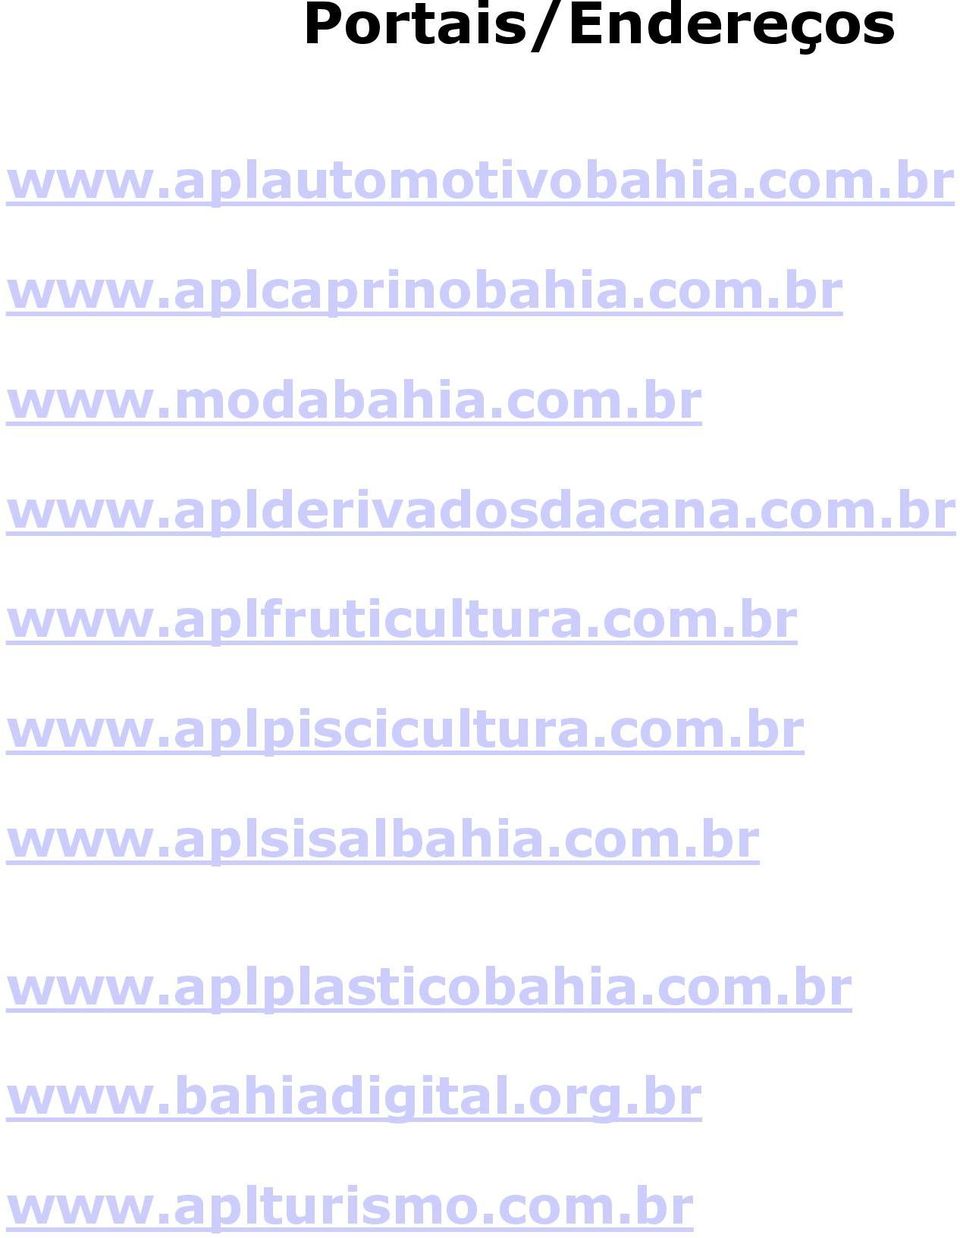 com.br www.aplpiscicultura.com.br www.aplsisalbahia.com.br www.aplplasticobahia.